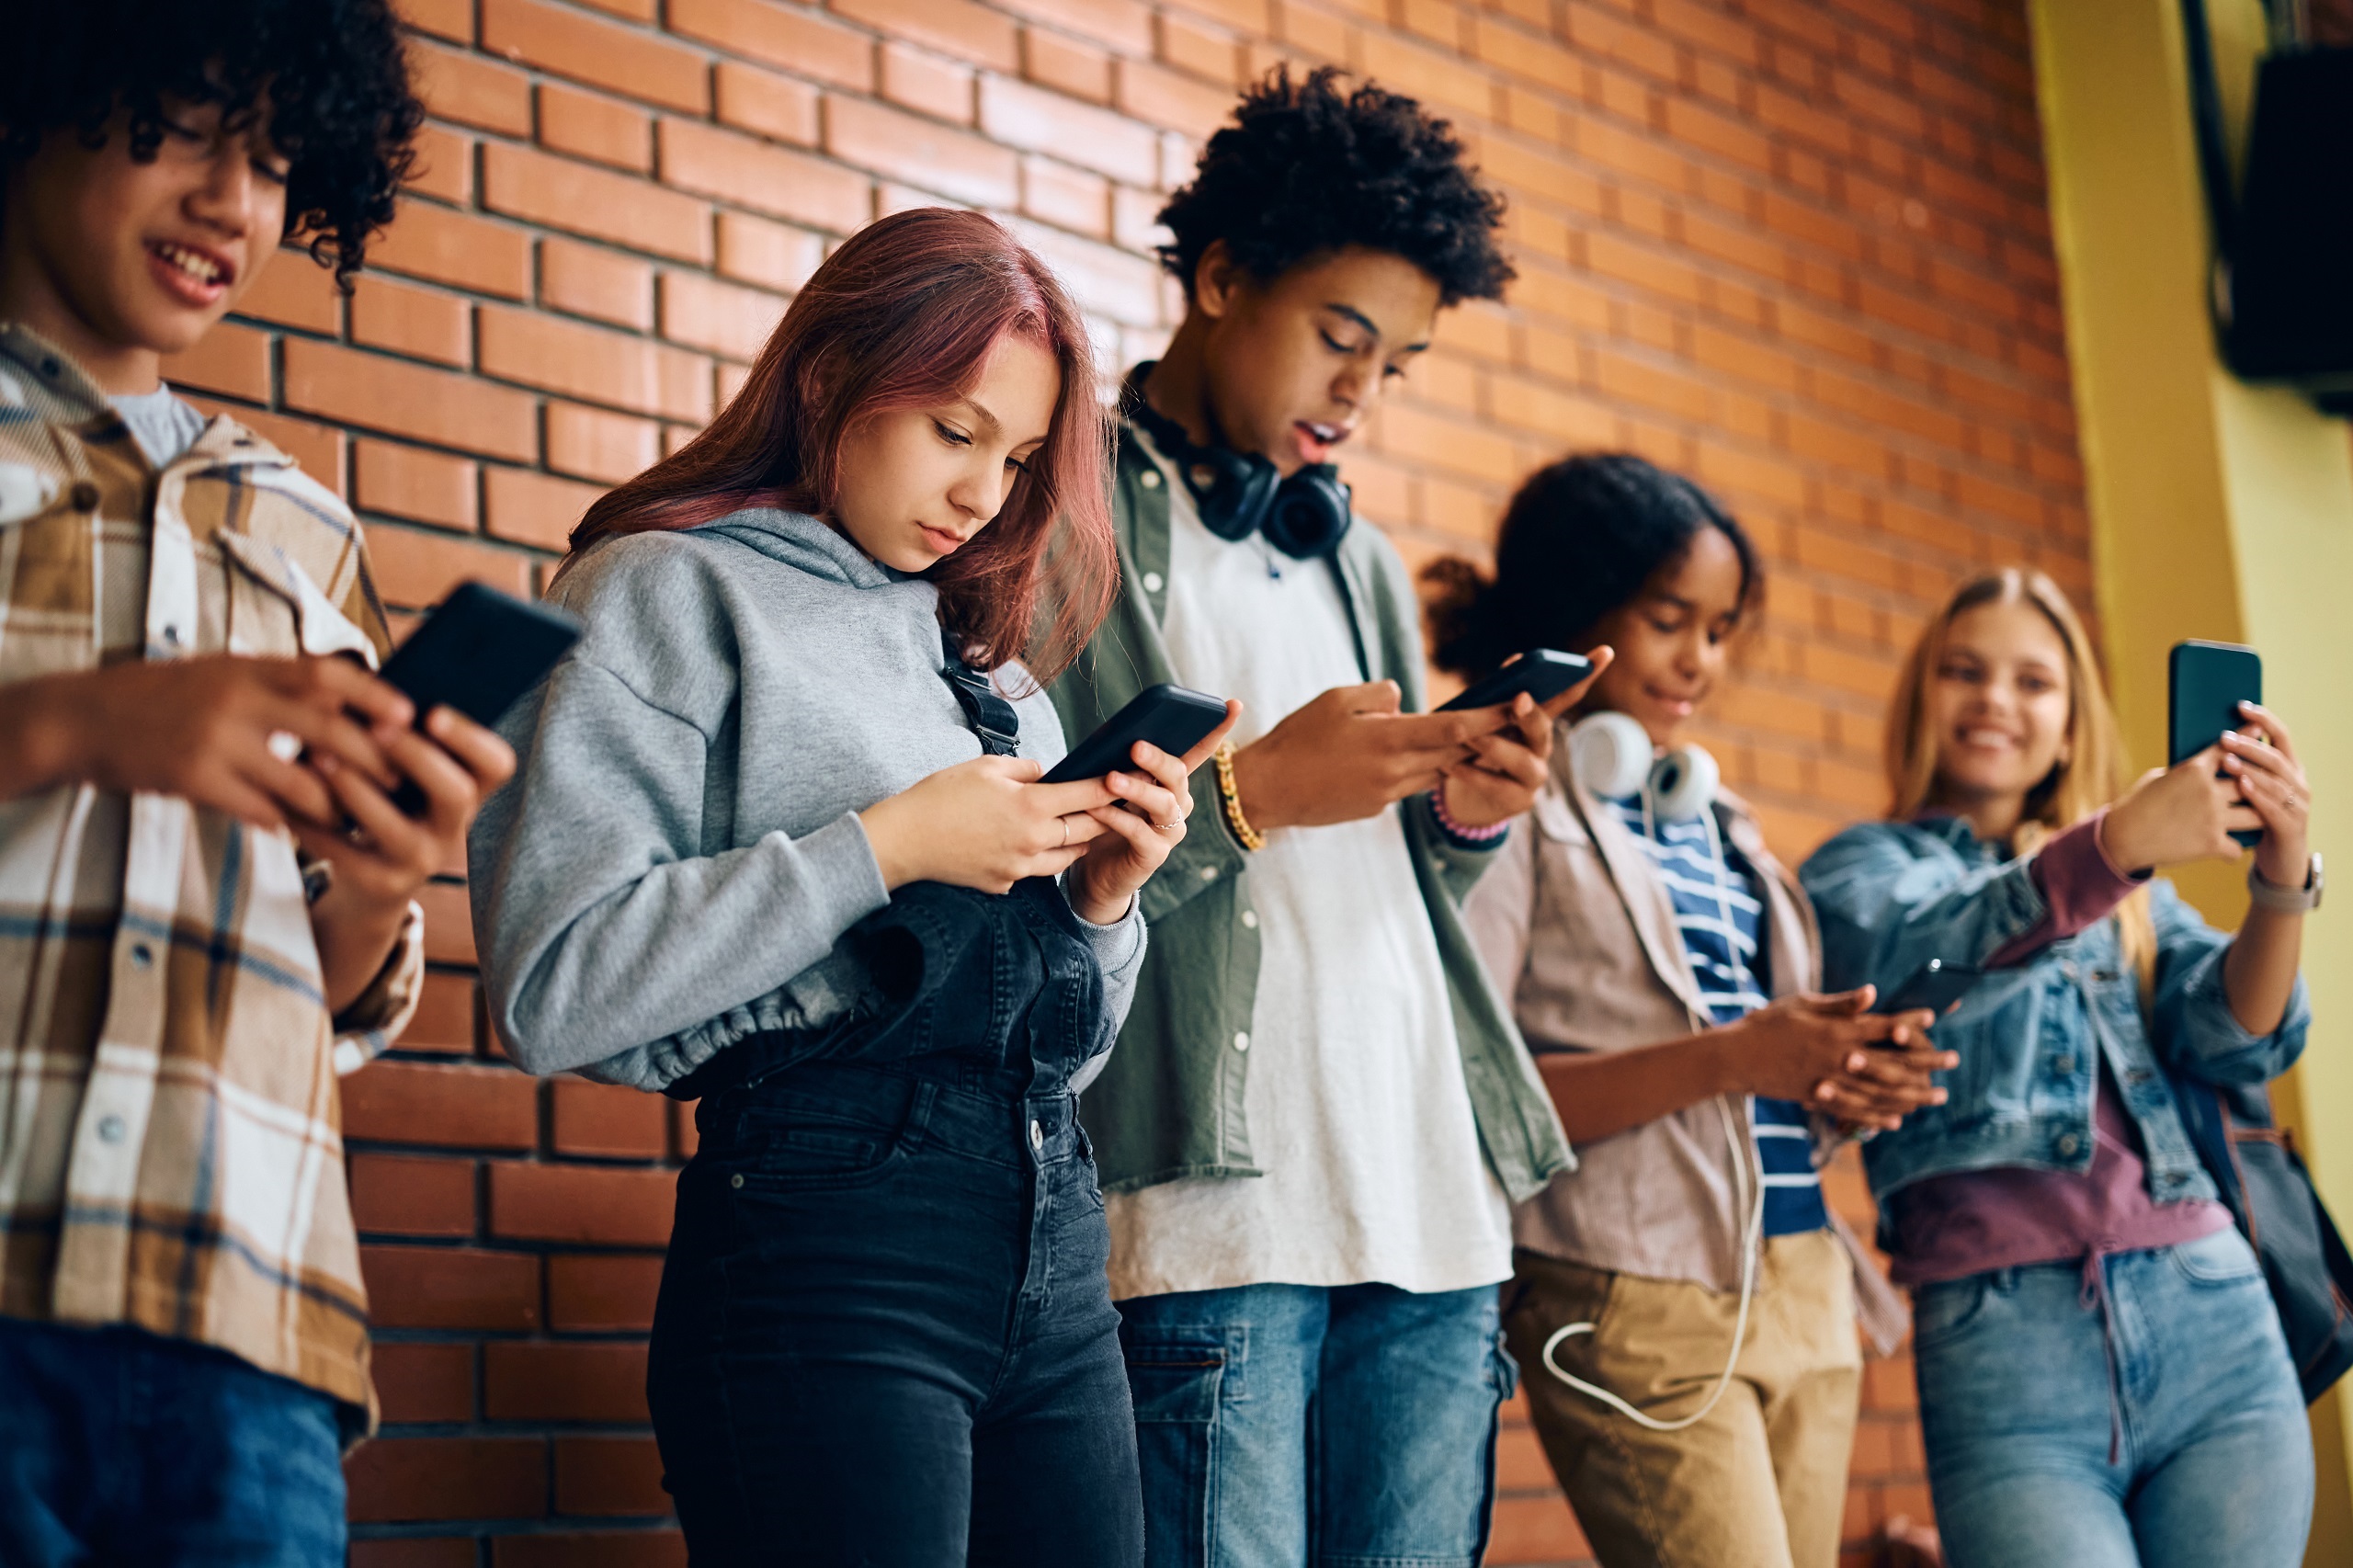 Jugendliche stehen an einer Wand und schauen auf ihr Handy. Symbolbild für Digitalisierung und Schule.